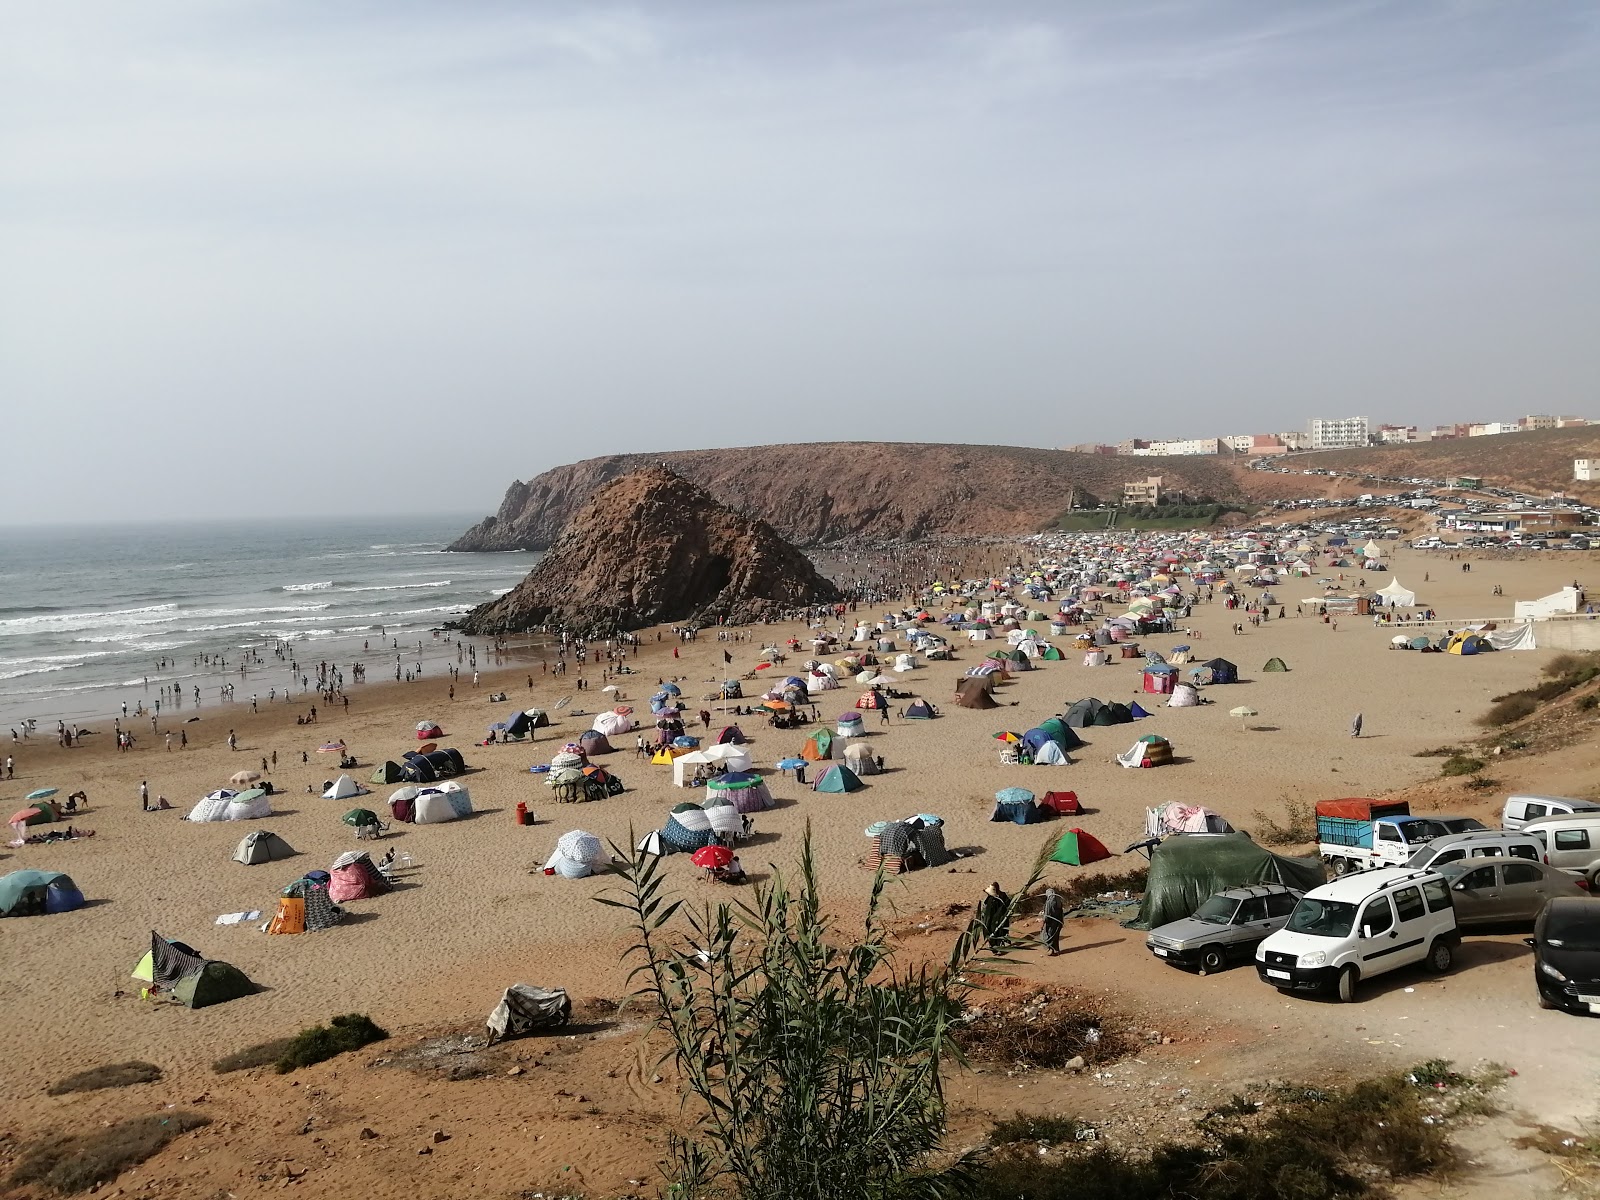 Foto di Plage Sidi Mohammed Ben Abdellah - luogo popolare tra gli intenditori del relax